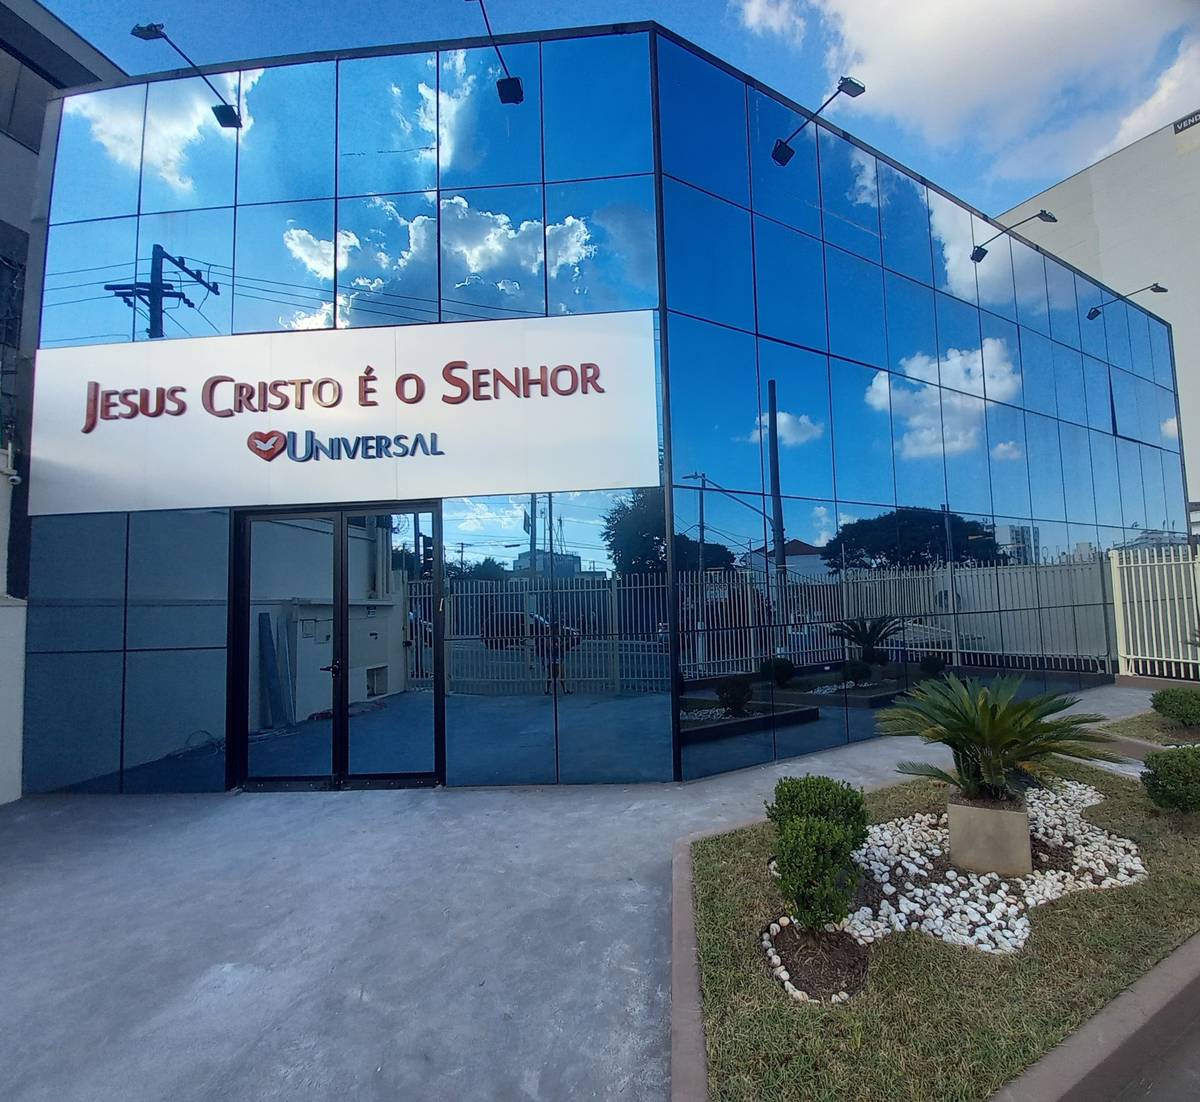 Igreja Universal JABAQUARA - Avenida Engenheiro Armando de Arruda Pereira, 1221 - Jabaquara, São Paulo - São Paulo  - 04309010 - Brasil